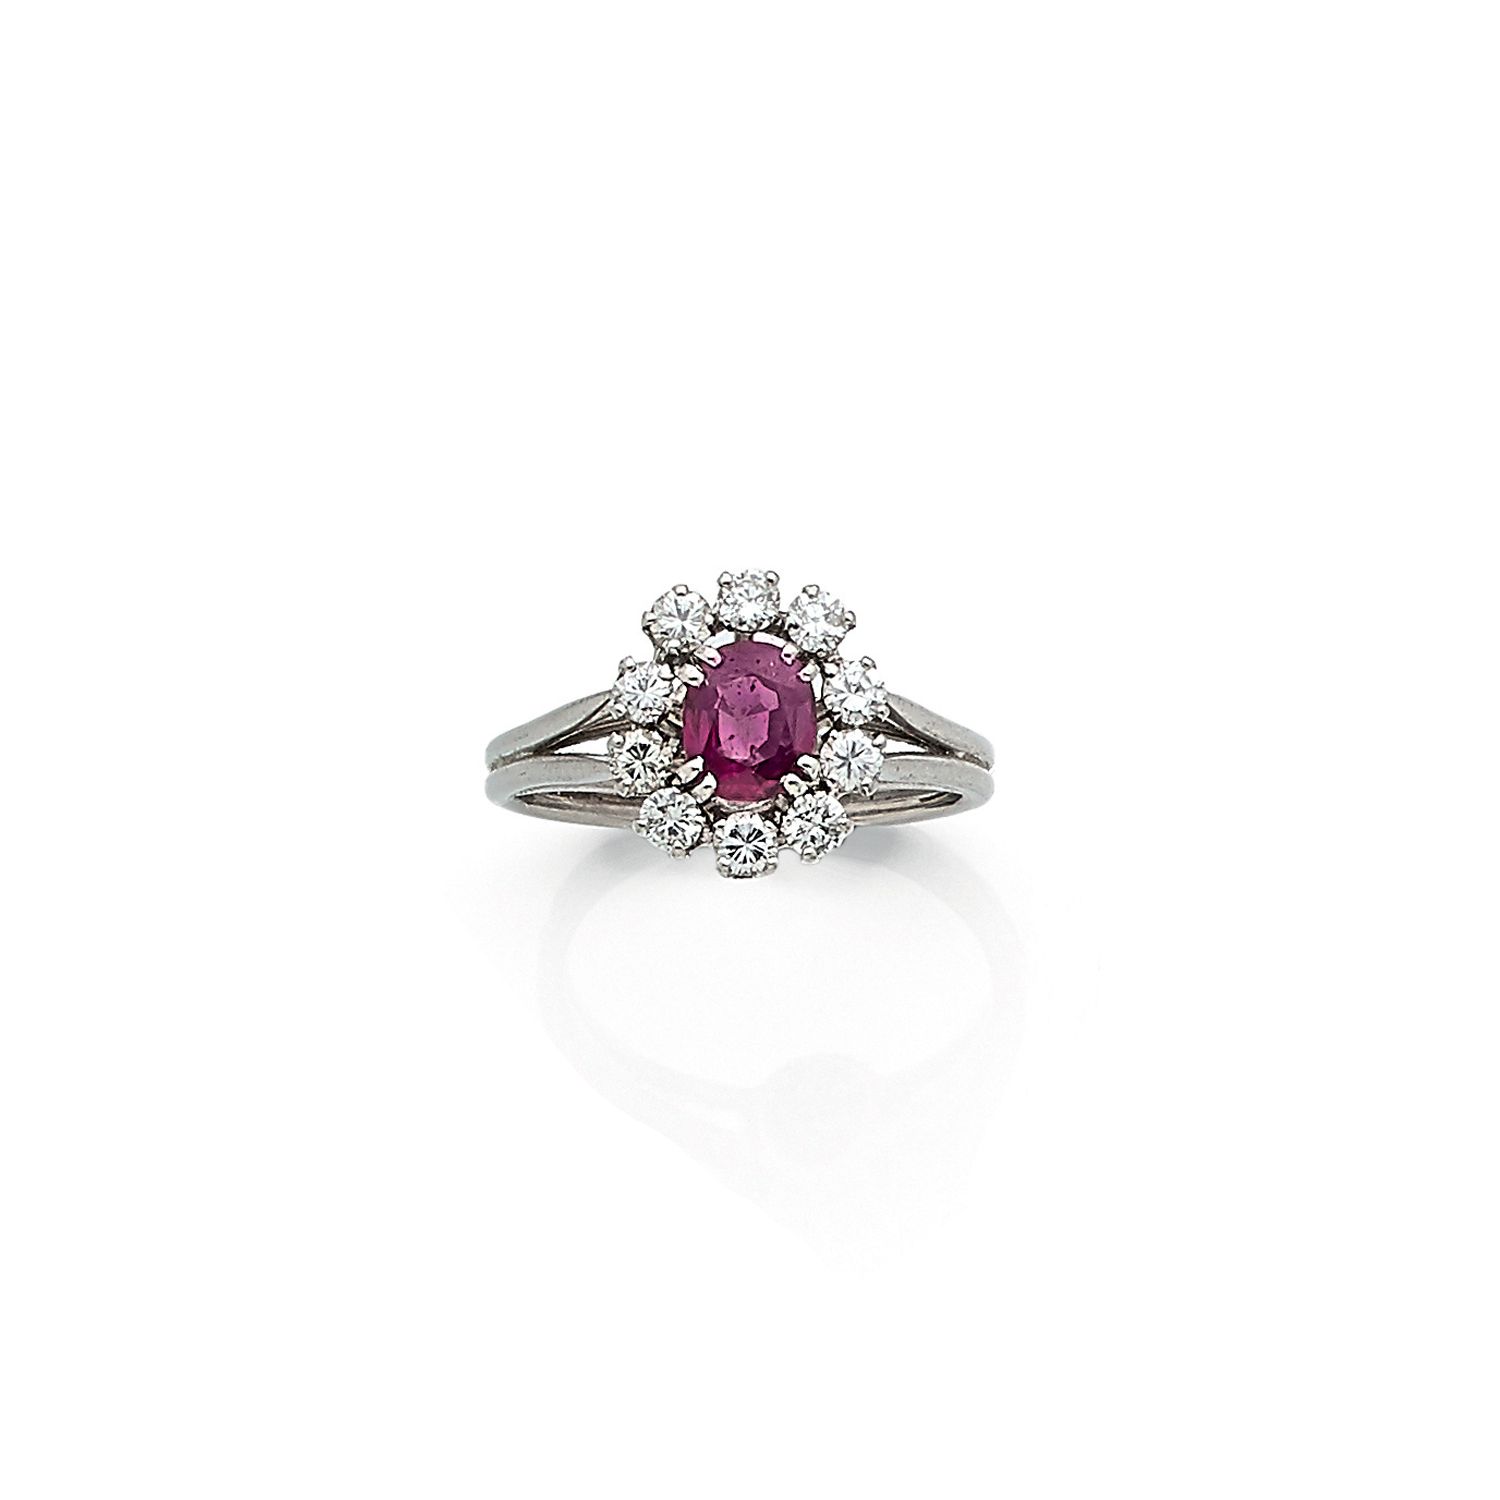 Null 铂金(850‰)菊花戒指，镶嵌着一颗约1克拉的椭圆形红宝石，周围环绕着圆形钻石。

Tdd : 55,5

毛重：6.3克